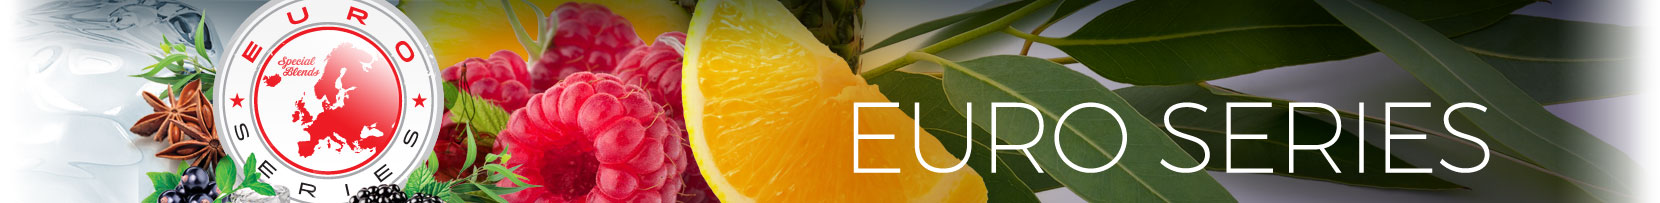 Banner-EuroSeries-1660x203-2019